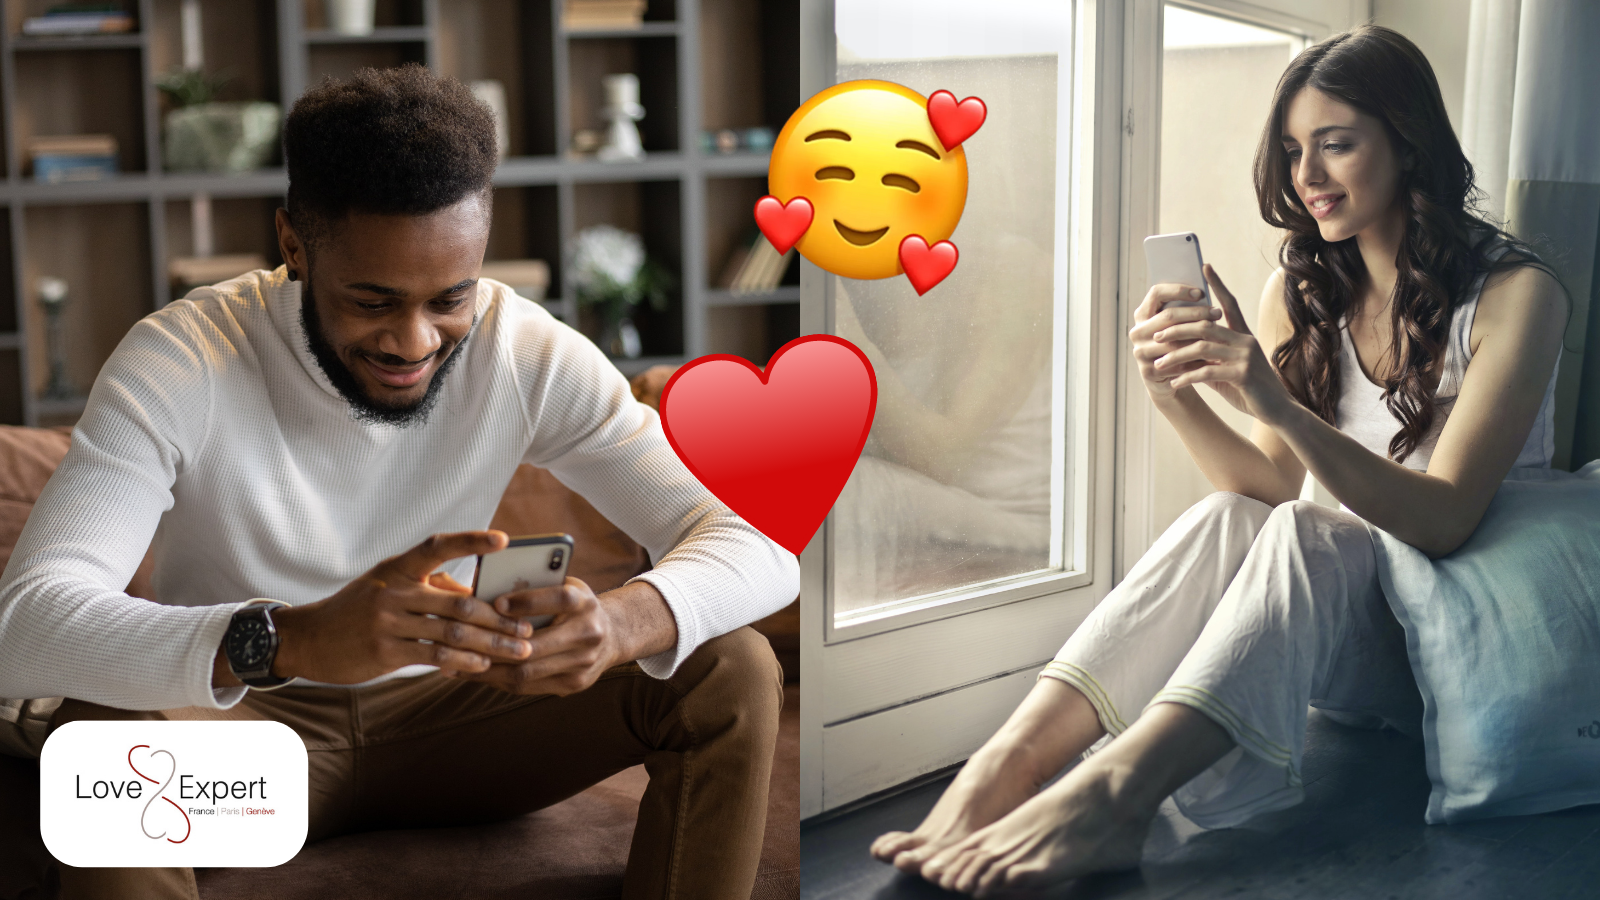 le sexting c'est quoi relations amoureuses séduction comment faire love expert agence de rencontre france paris genève